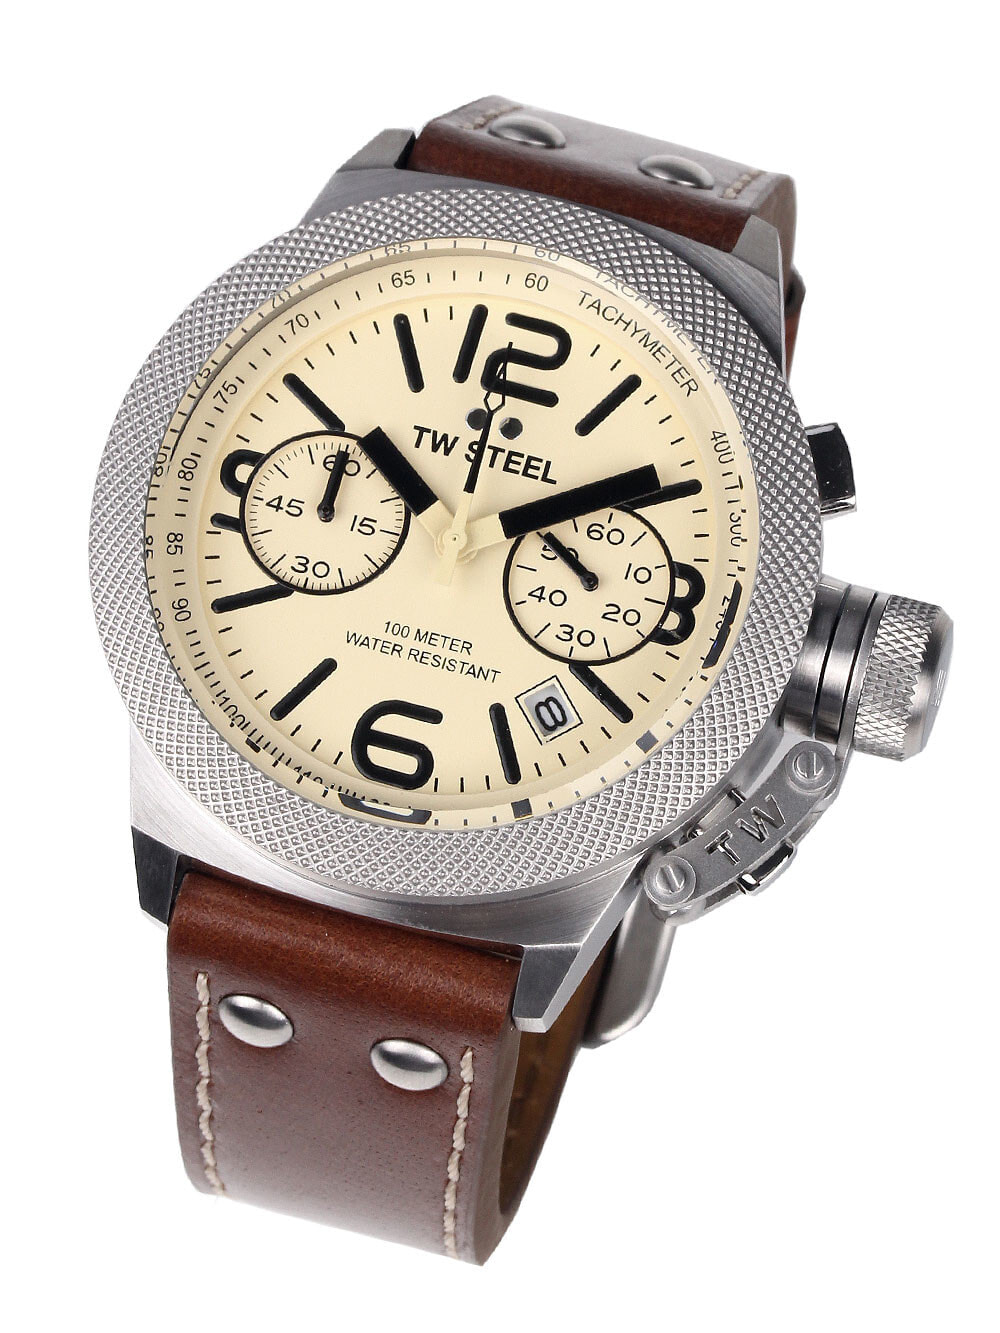 Мужские наручные часы с кожаным коричневым ремешком TW Steel CS13 Canteen Leather Chronograph 45mm 10 ATM